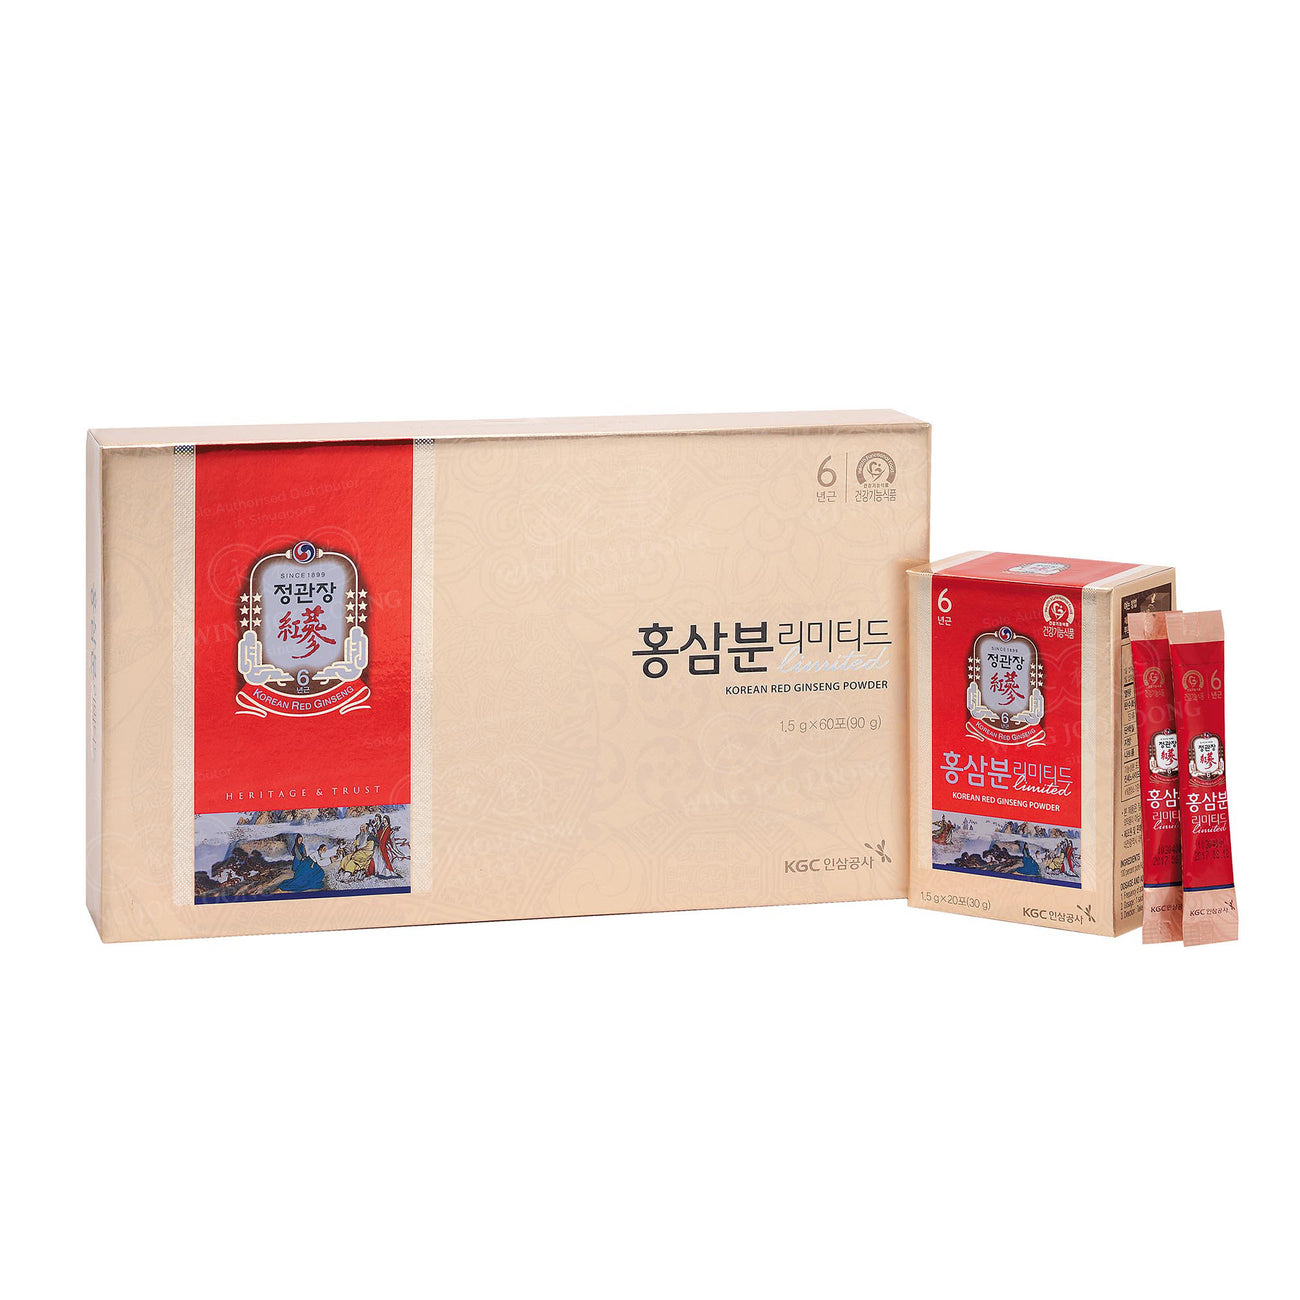 Cheong Kwan Jang Korean Red Ginseng Powder Limited 高丽参粉条装